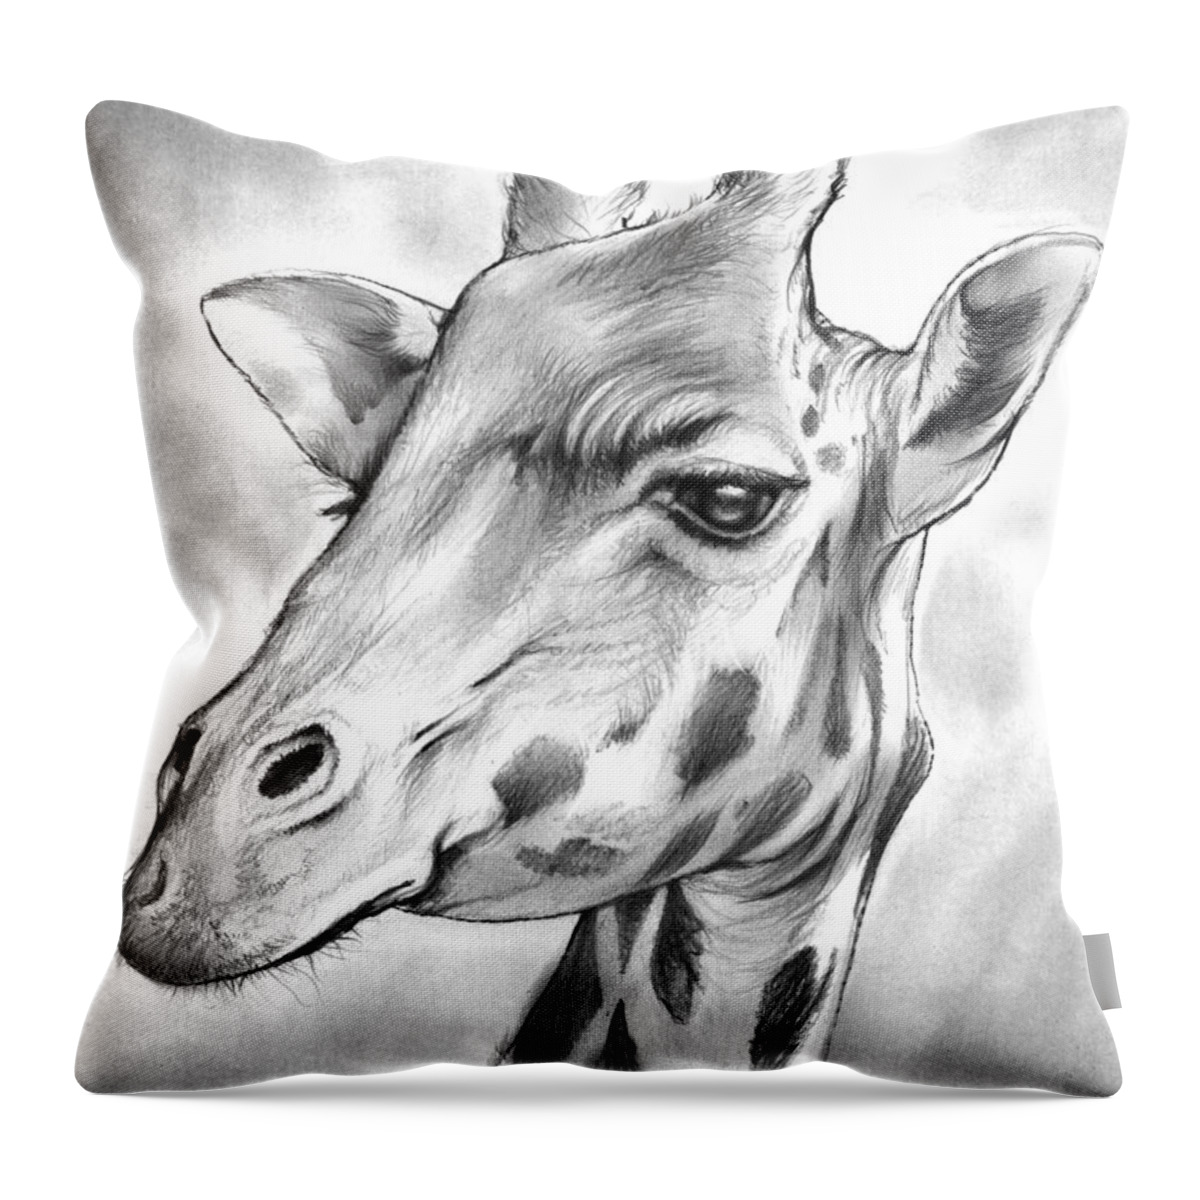 Giraffe Throw Pillow featuring the drawing Giraffe by Greg Joens